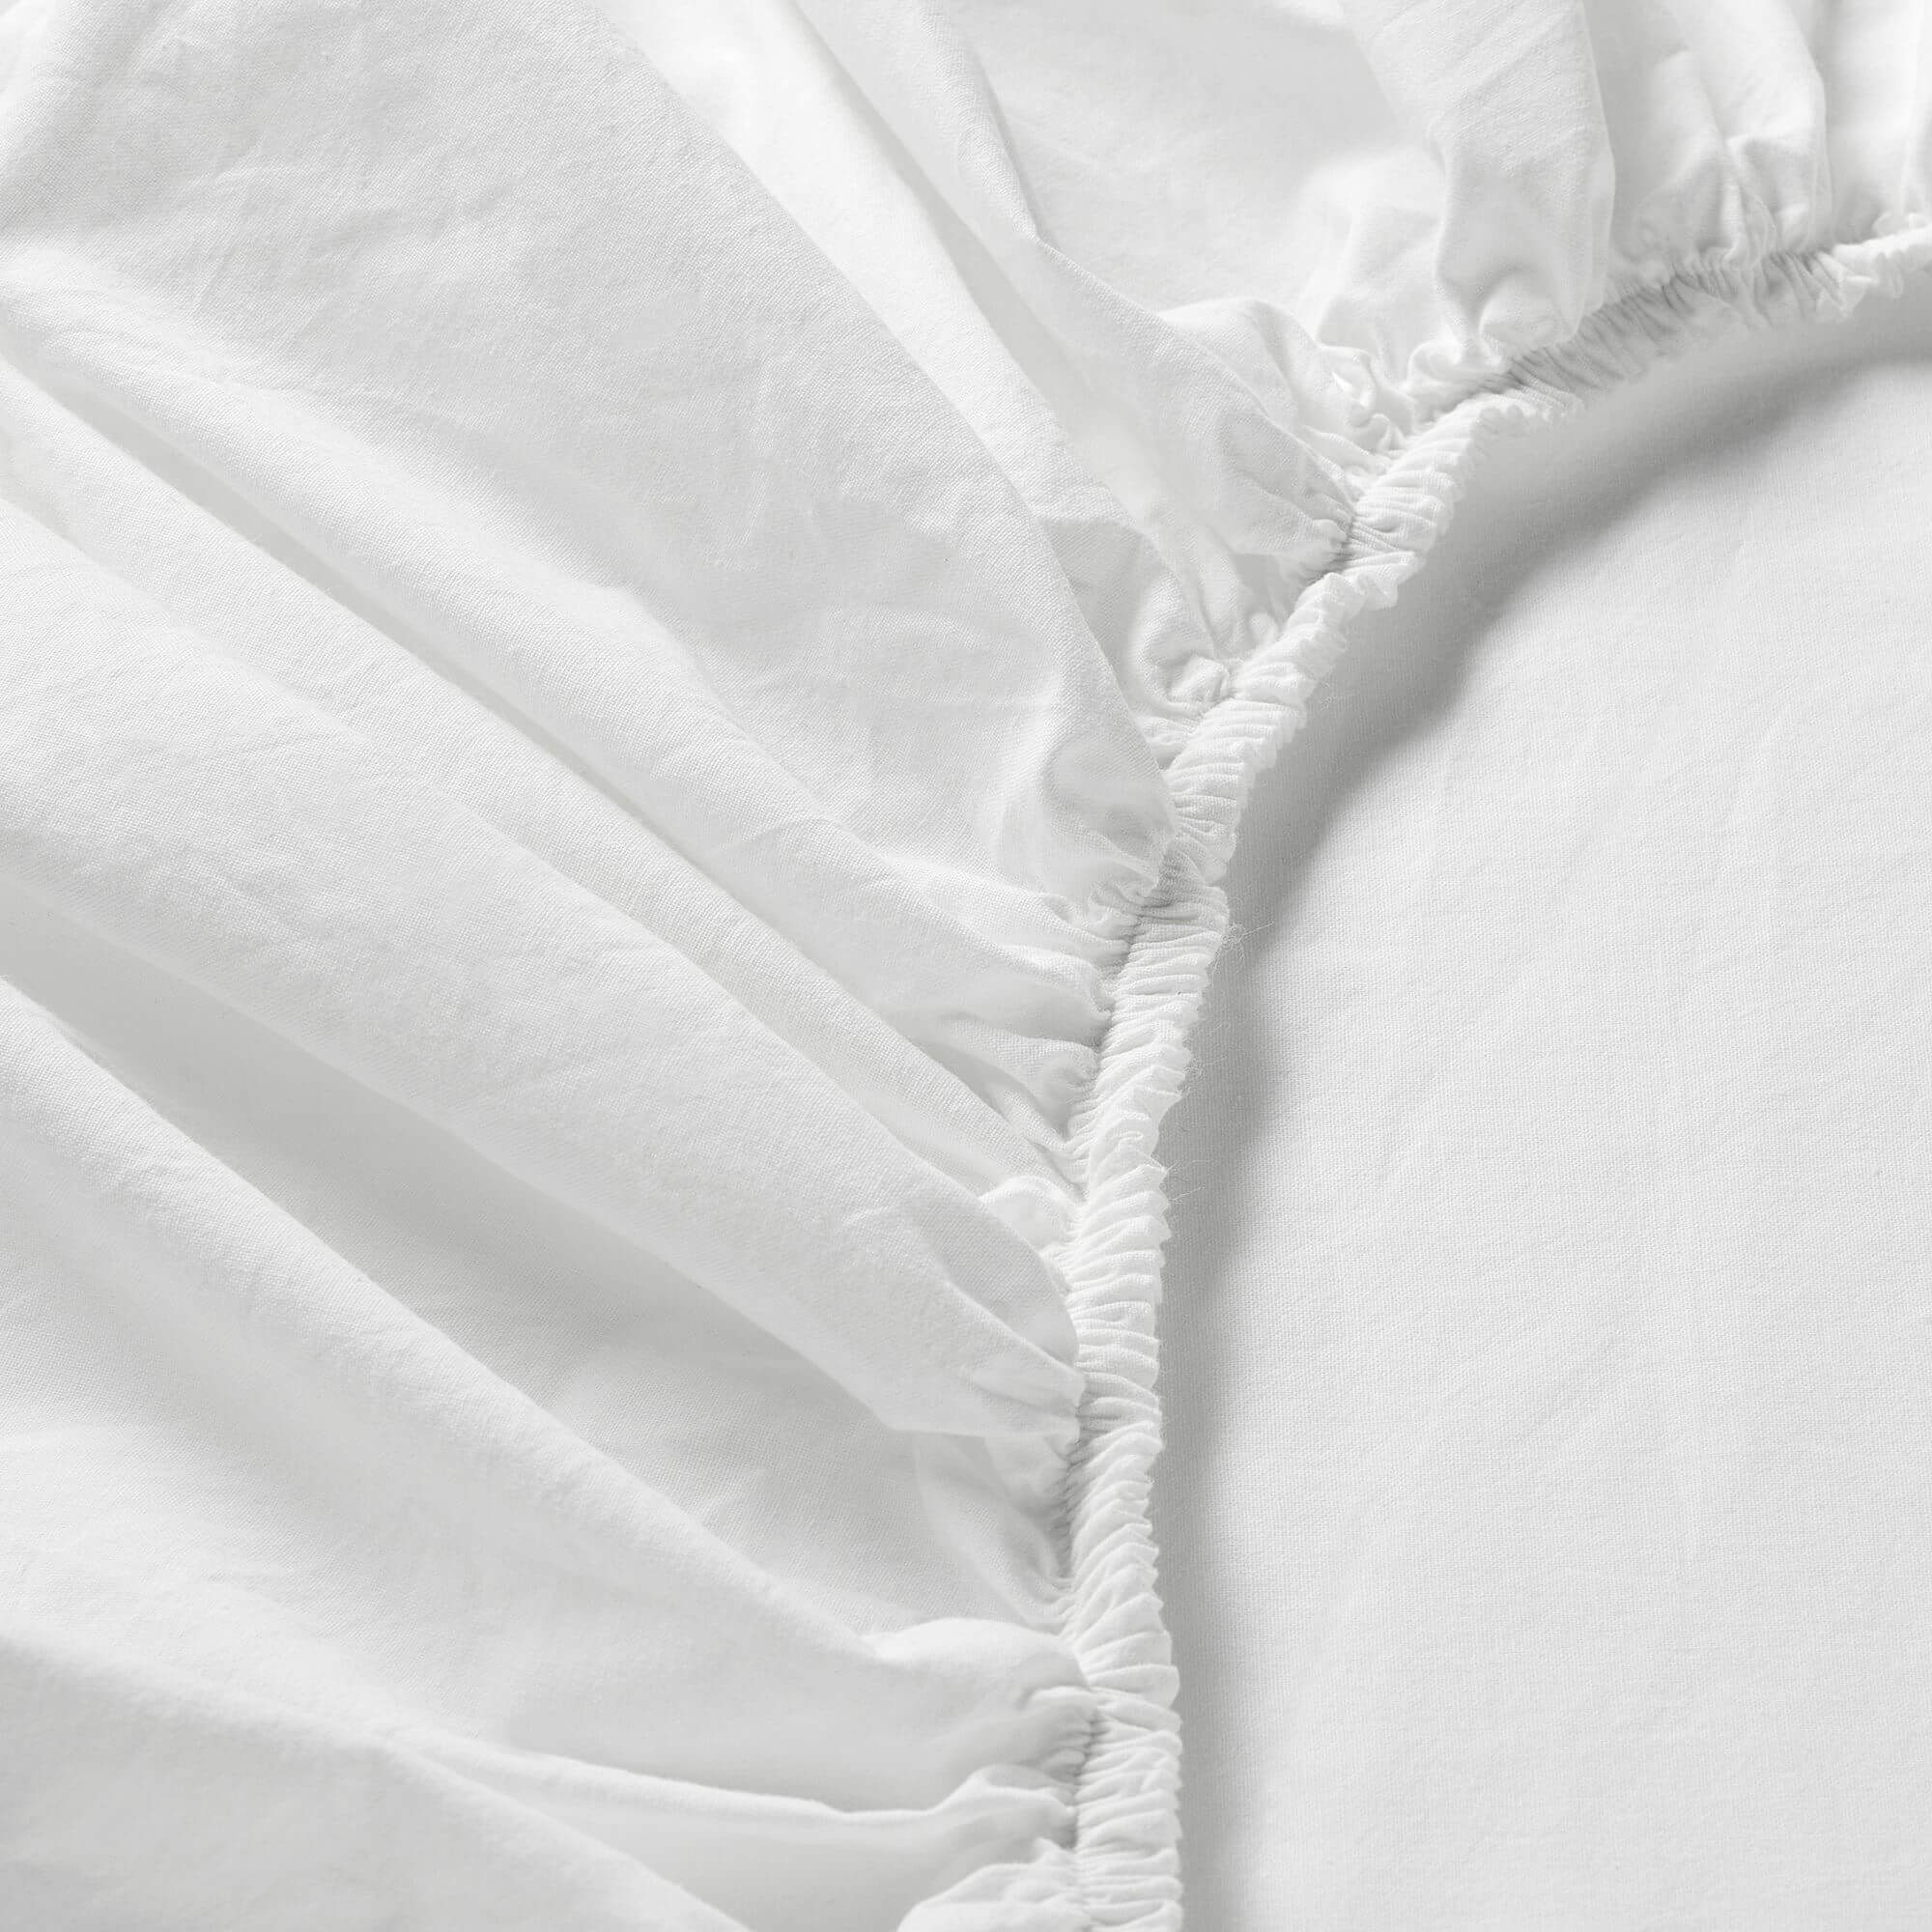 простыня натяжная из джерси 100 биохлопок для детской кровати Простыня натяжная Ikea Dvala, 140x200 см, белый